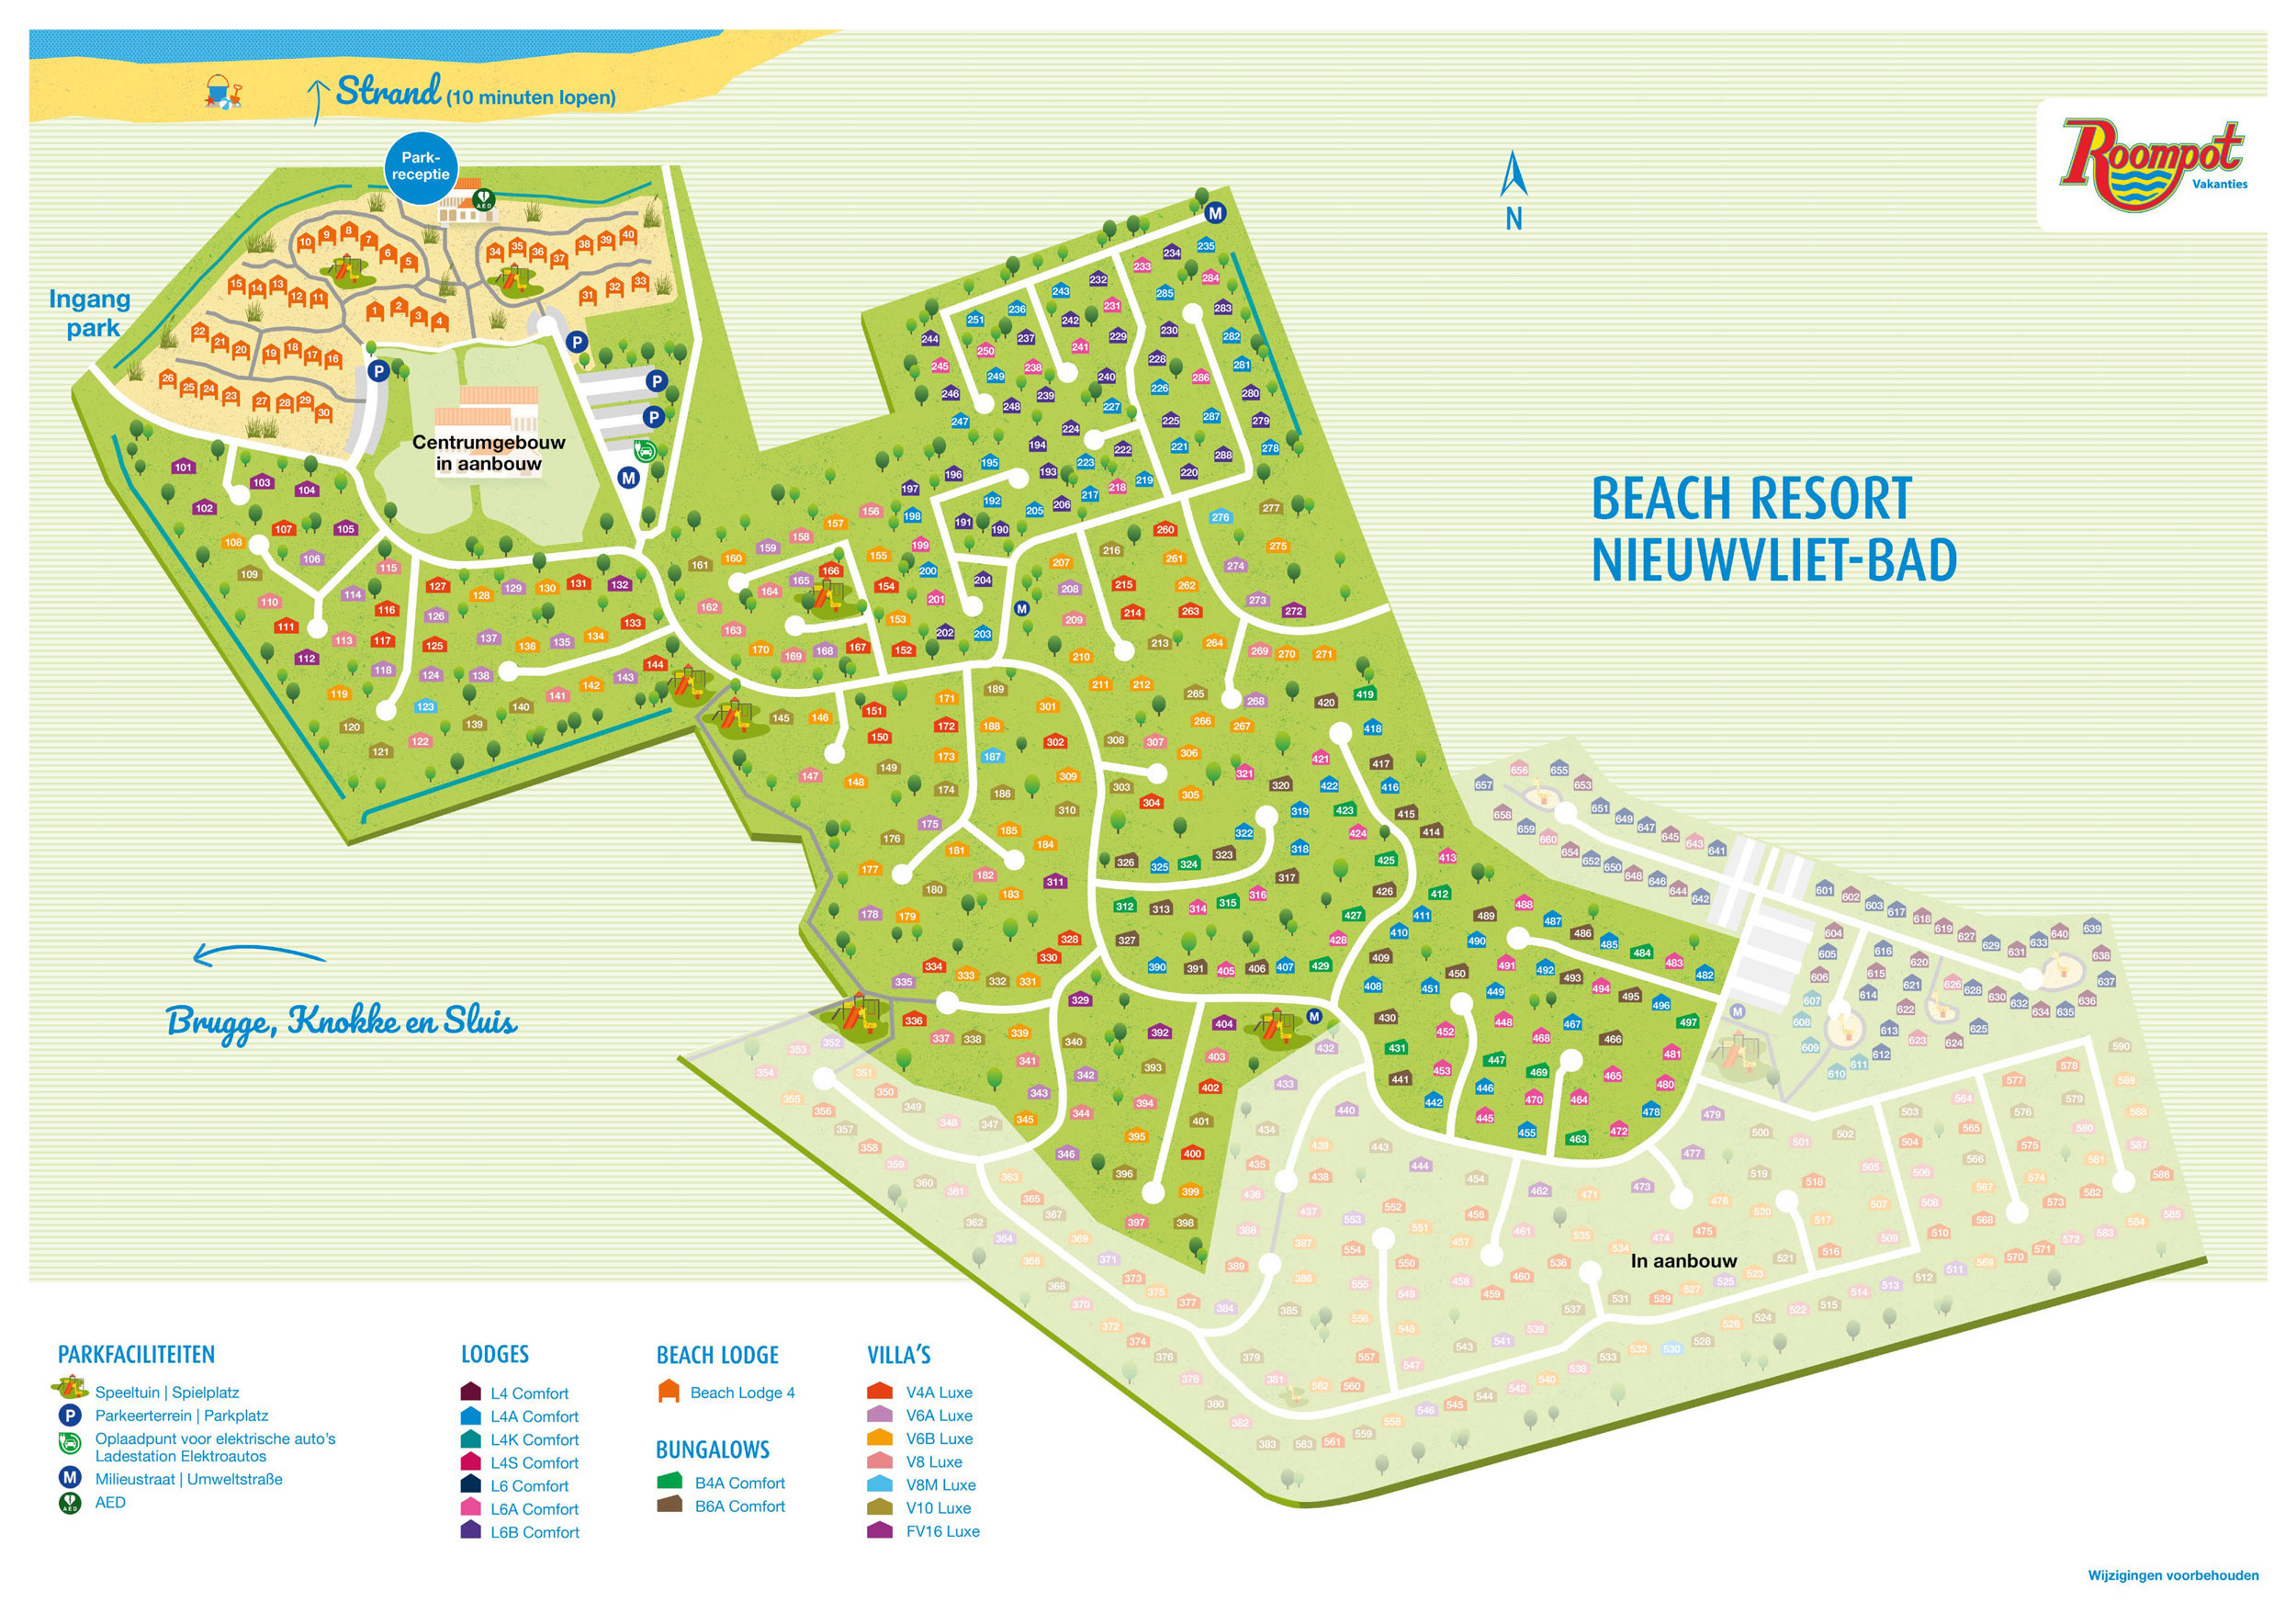 Campsite map Roompot Beach Resort Nieuwvliet-Bad